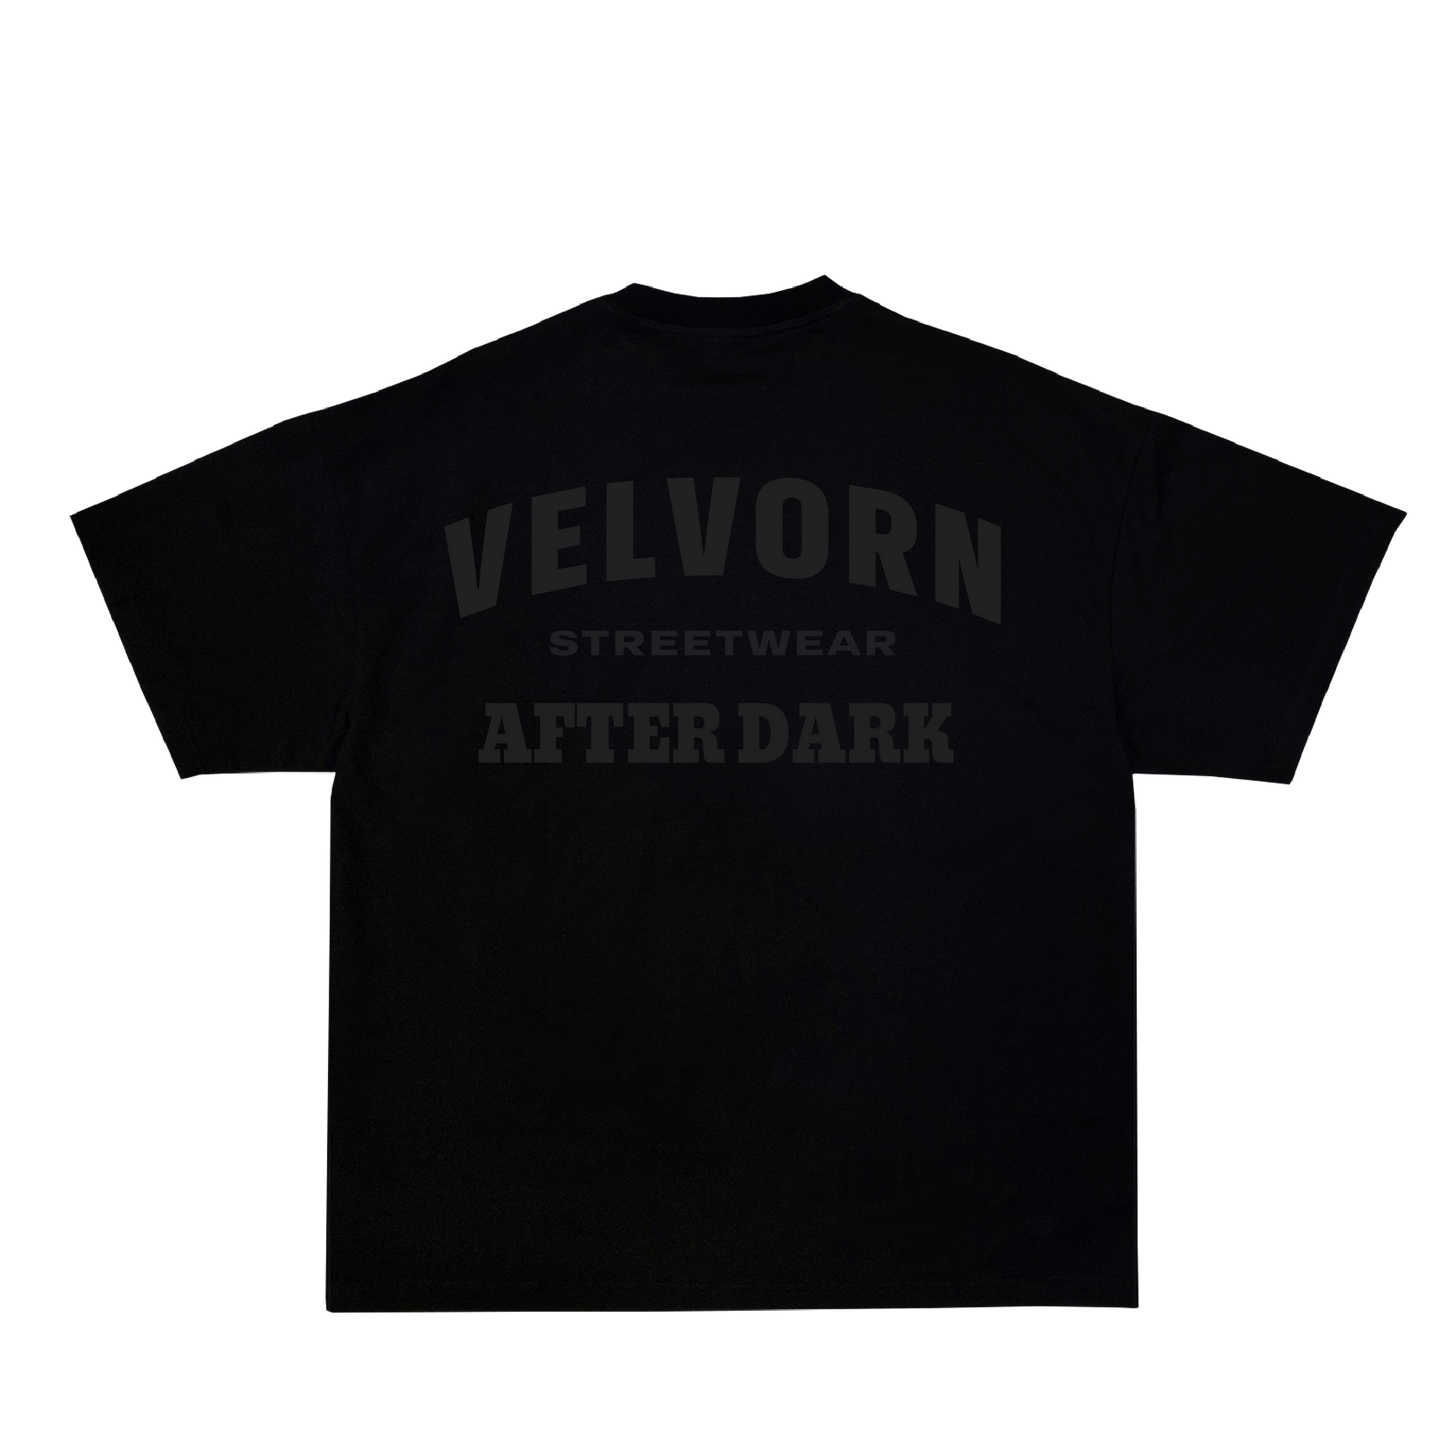 Velvorn Black Tee | After Dark Collection